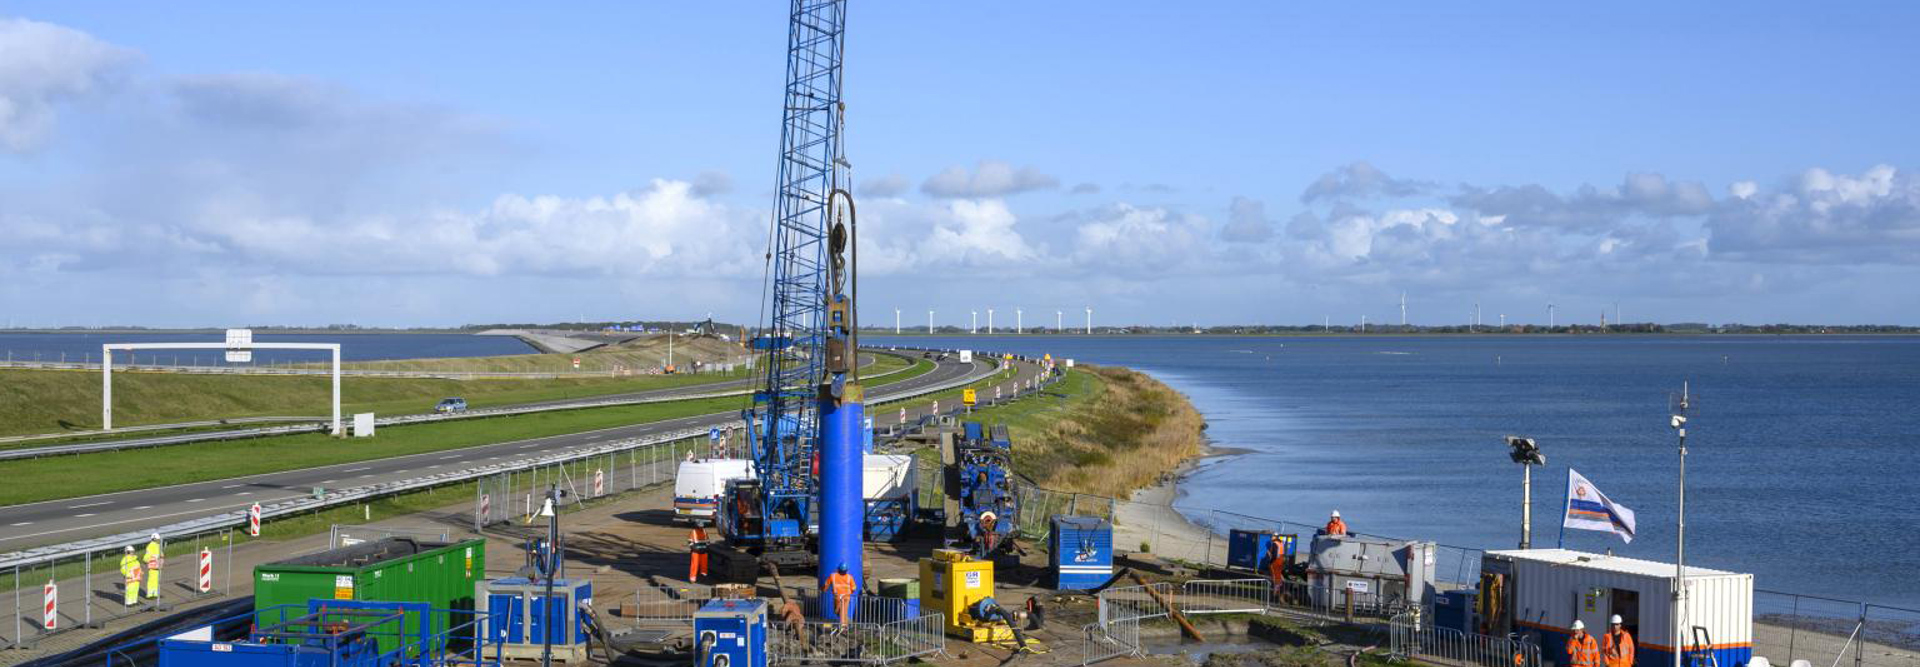 Bouw De Nieuwe Afsluitdijk Met Kooi Camerabewaking